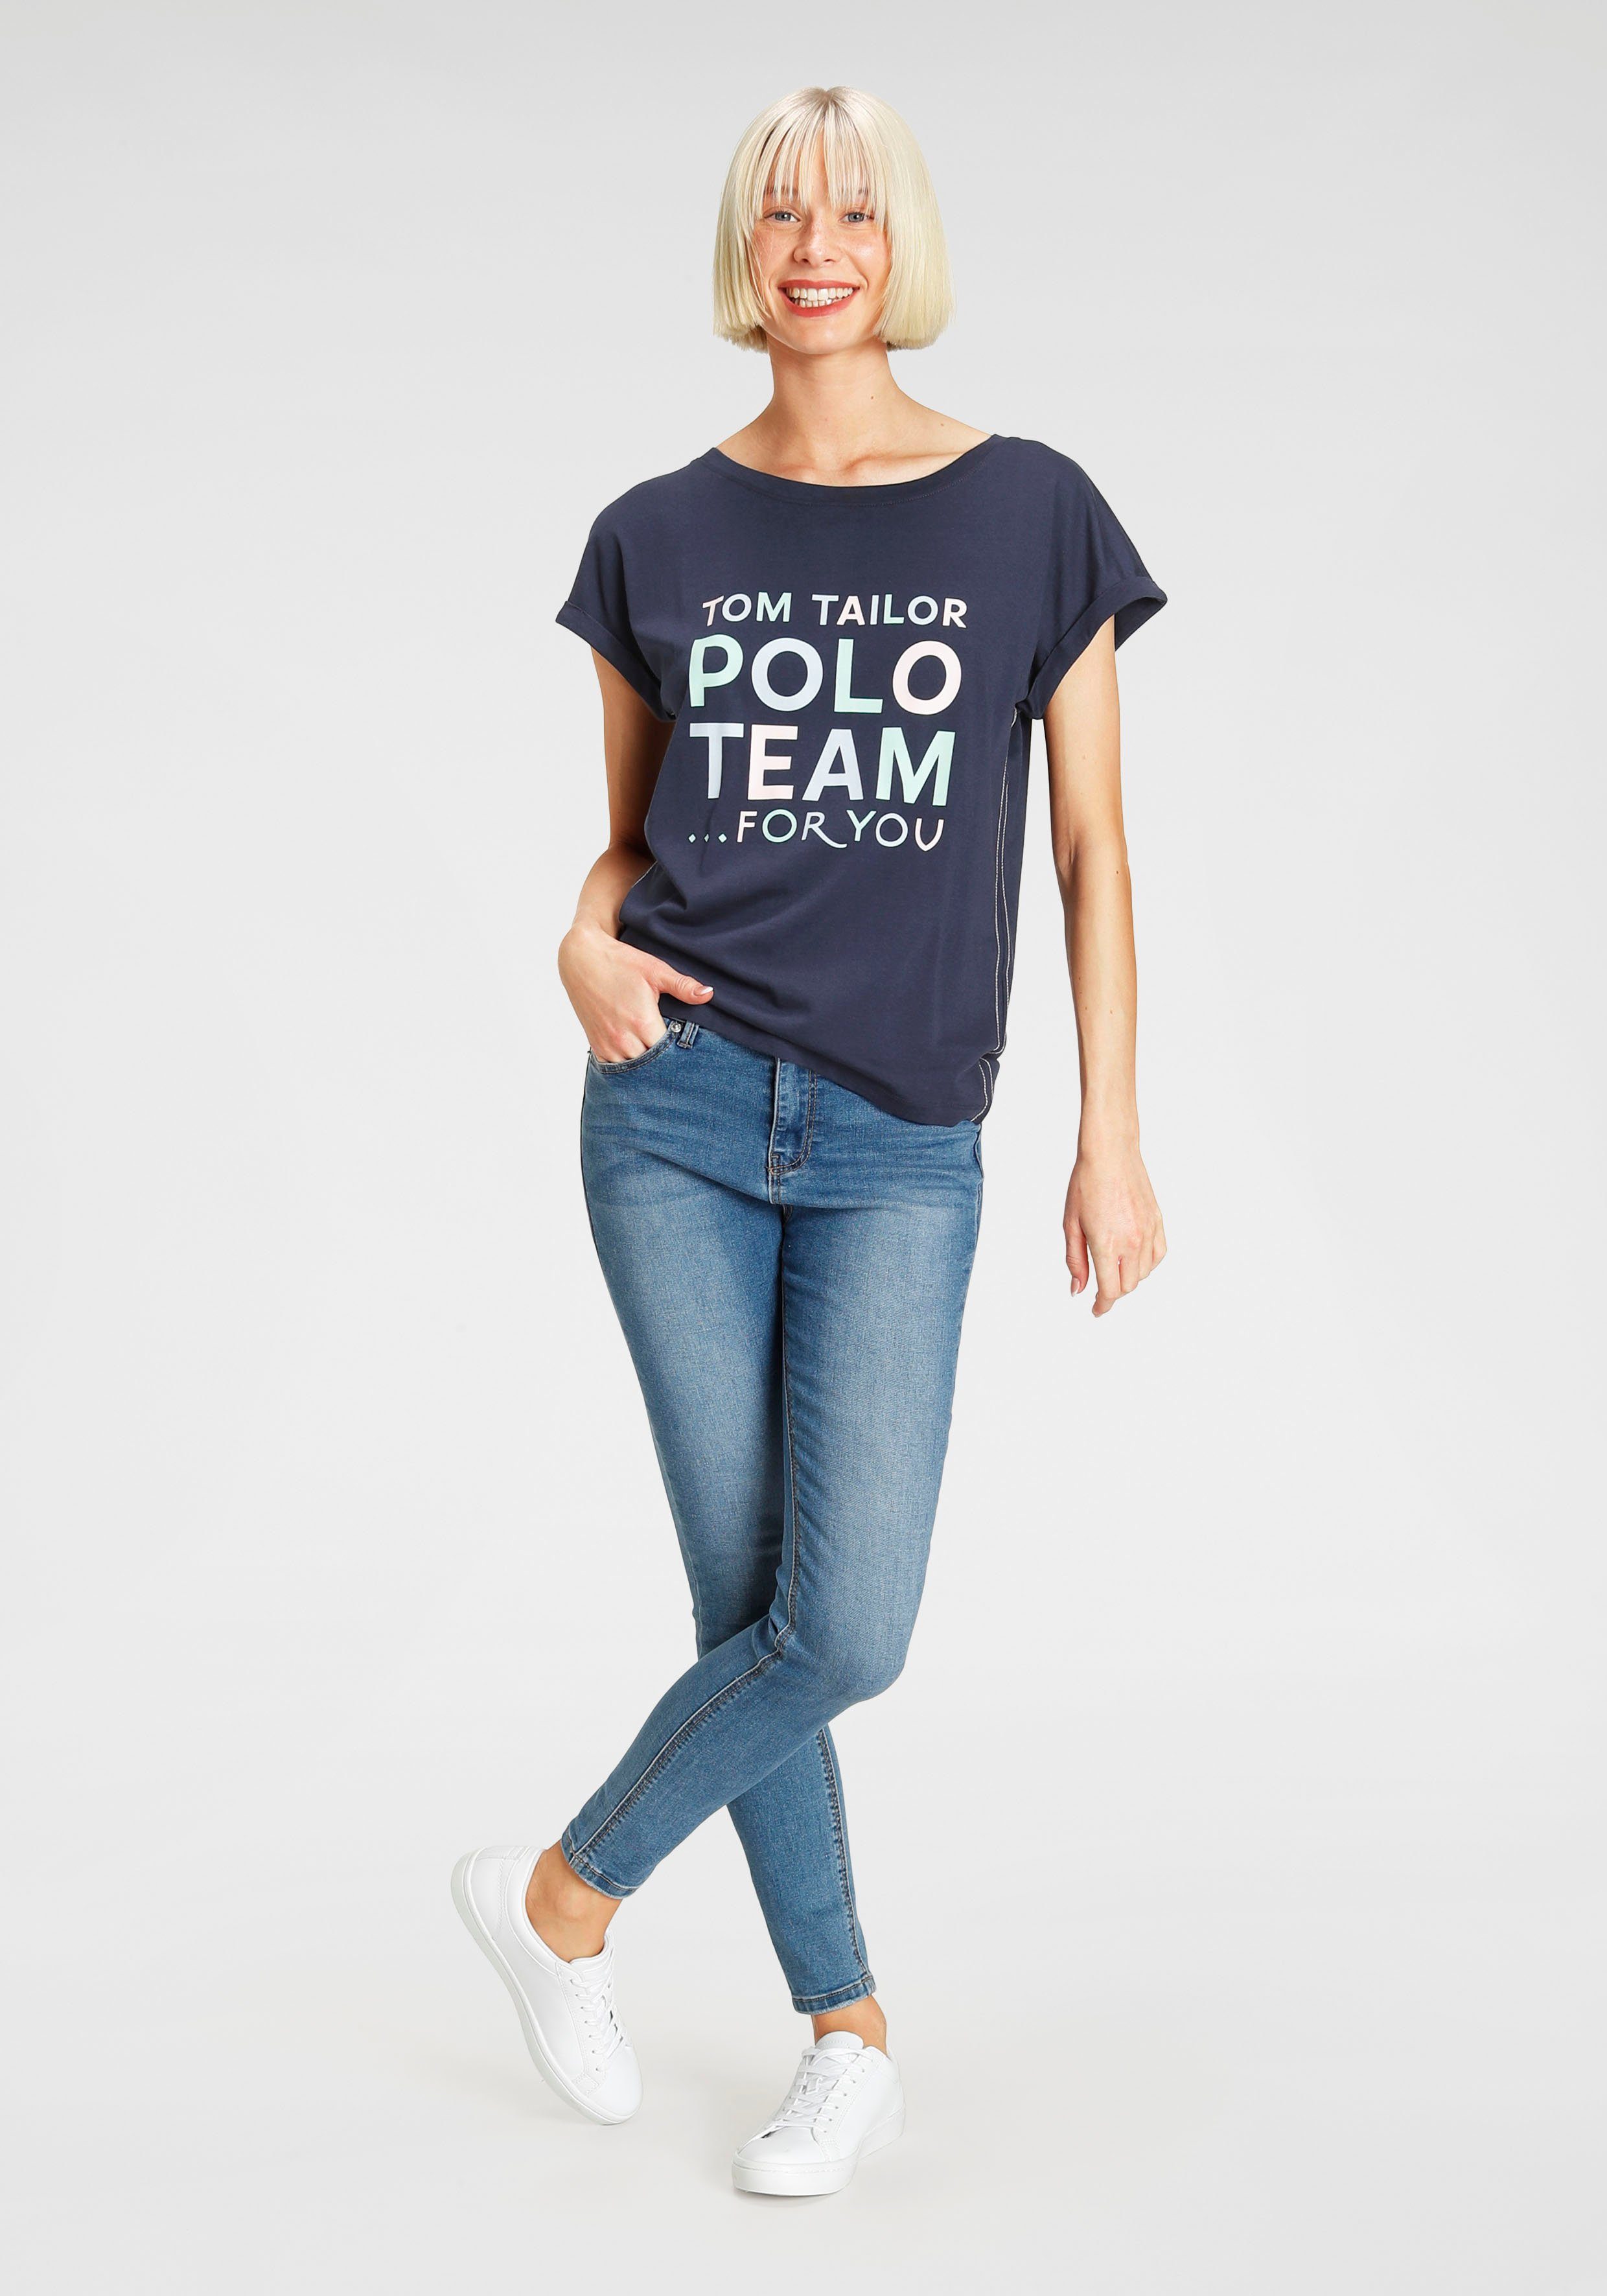 TOM TAILOR Polo Team Print-Shirt Logo-Print großem farbenfrohen